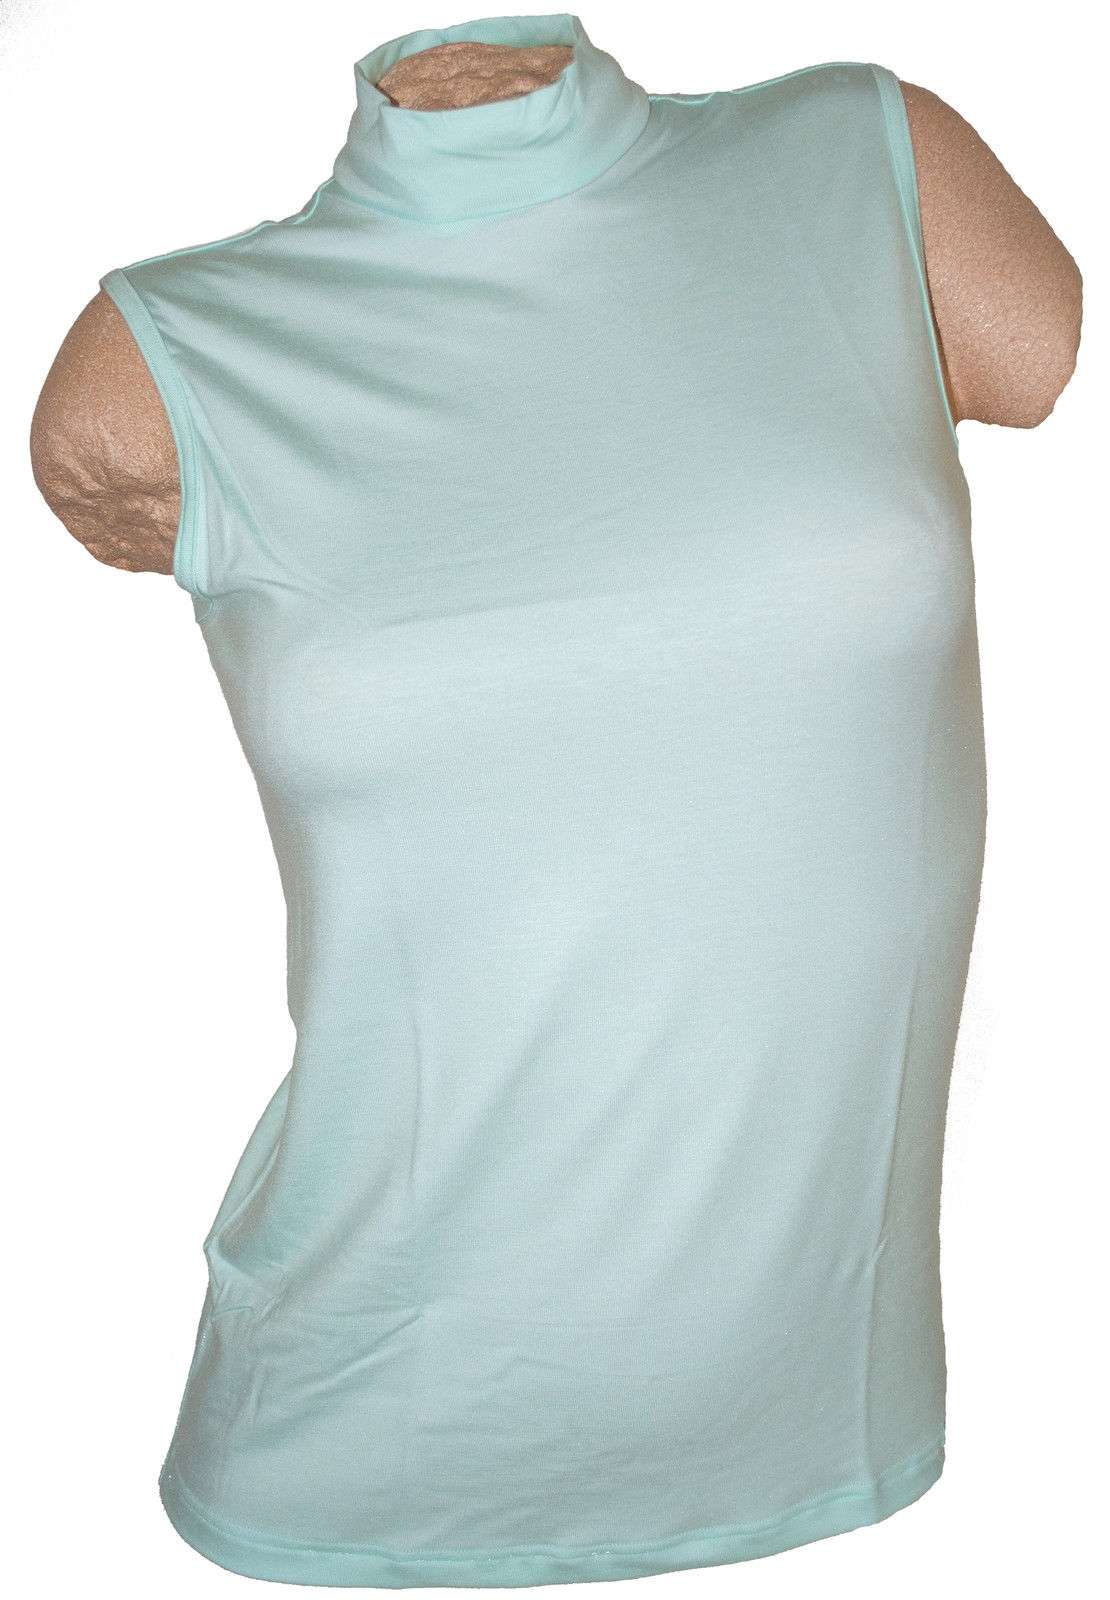 Micro Modal 518303 THIEME Damen Cityshirt ohne Arm pfirsich 